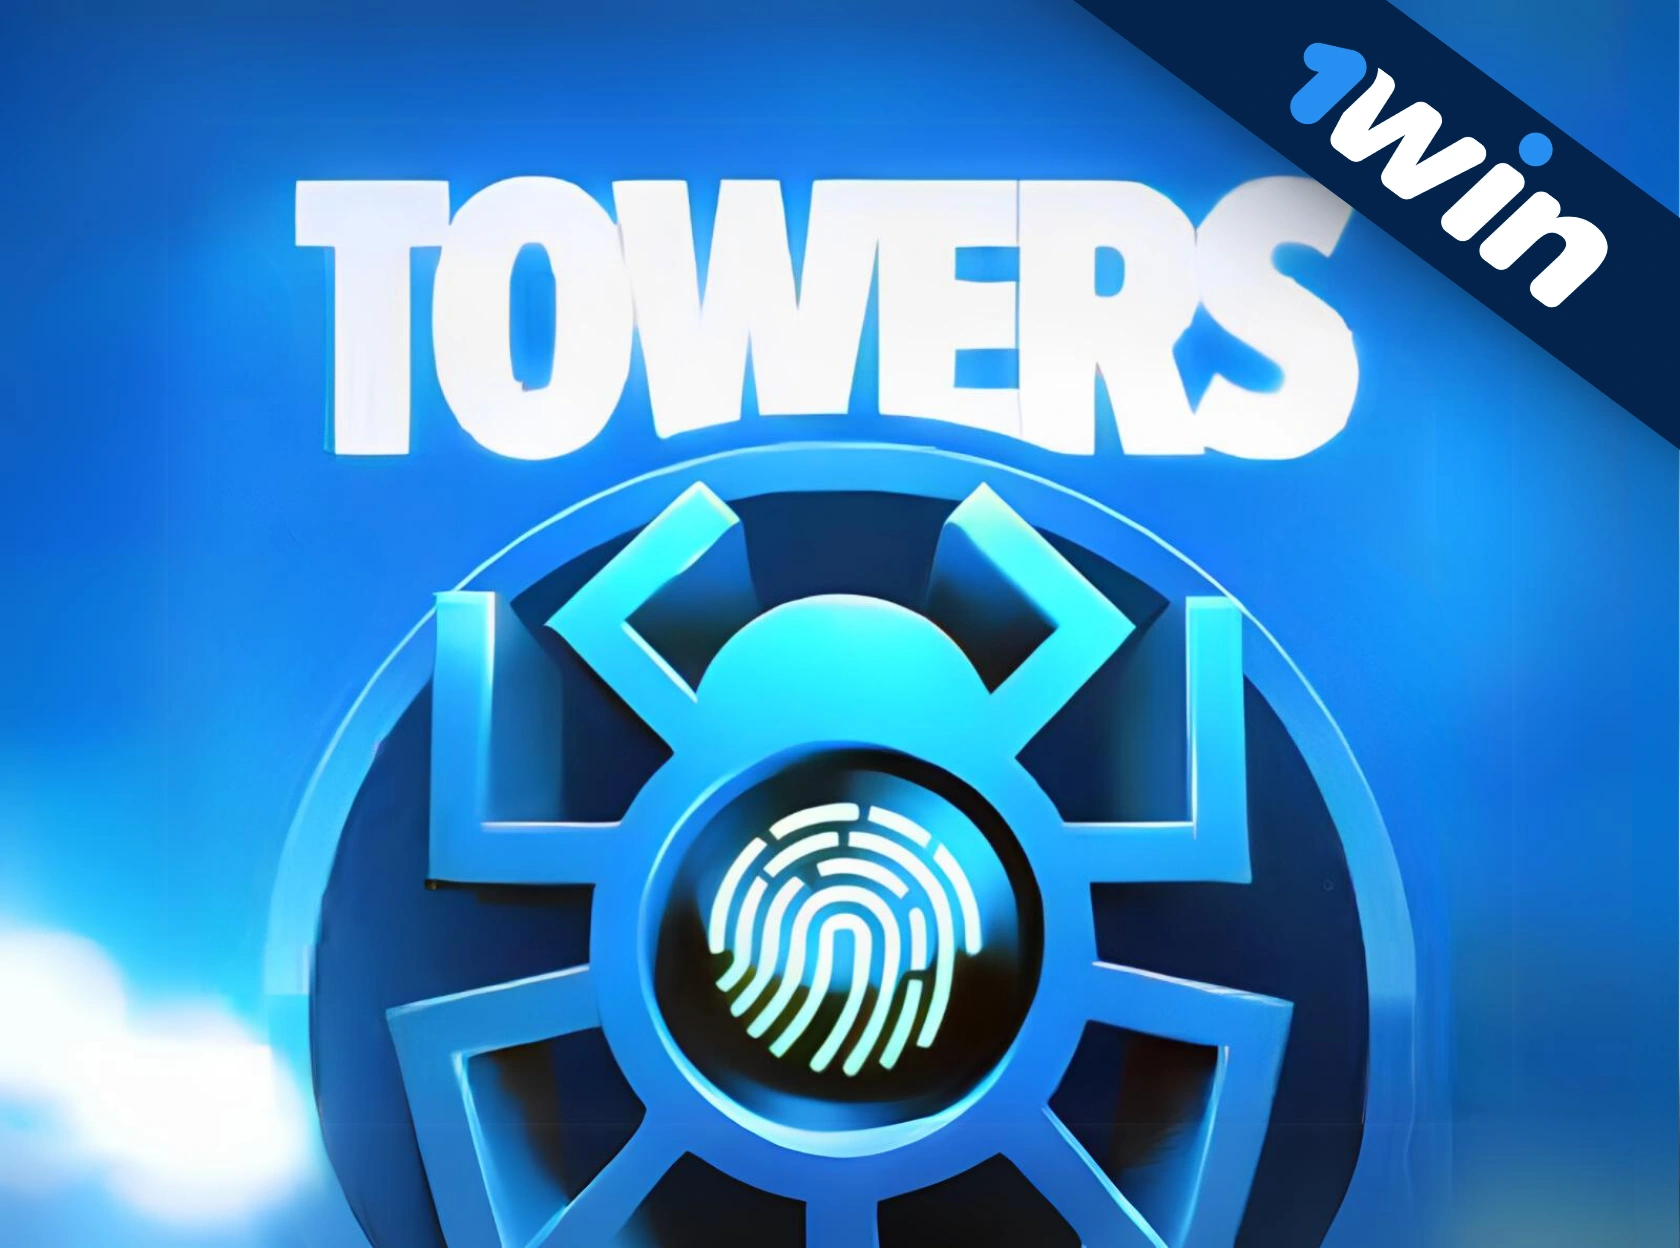 Towers 1win é um novo jogo exclusivo!